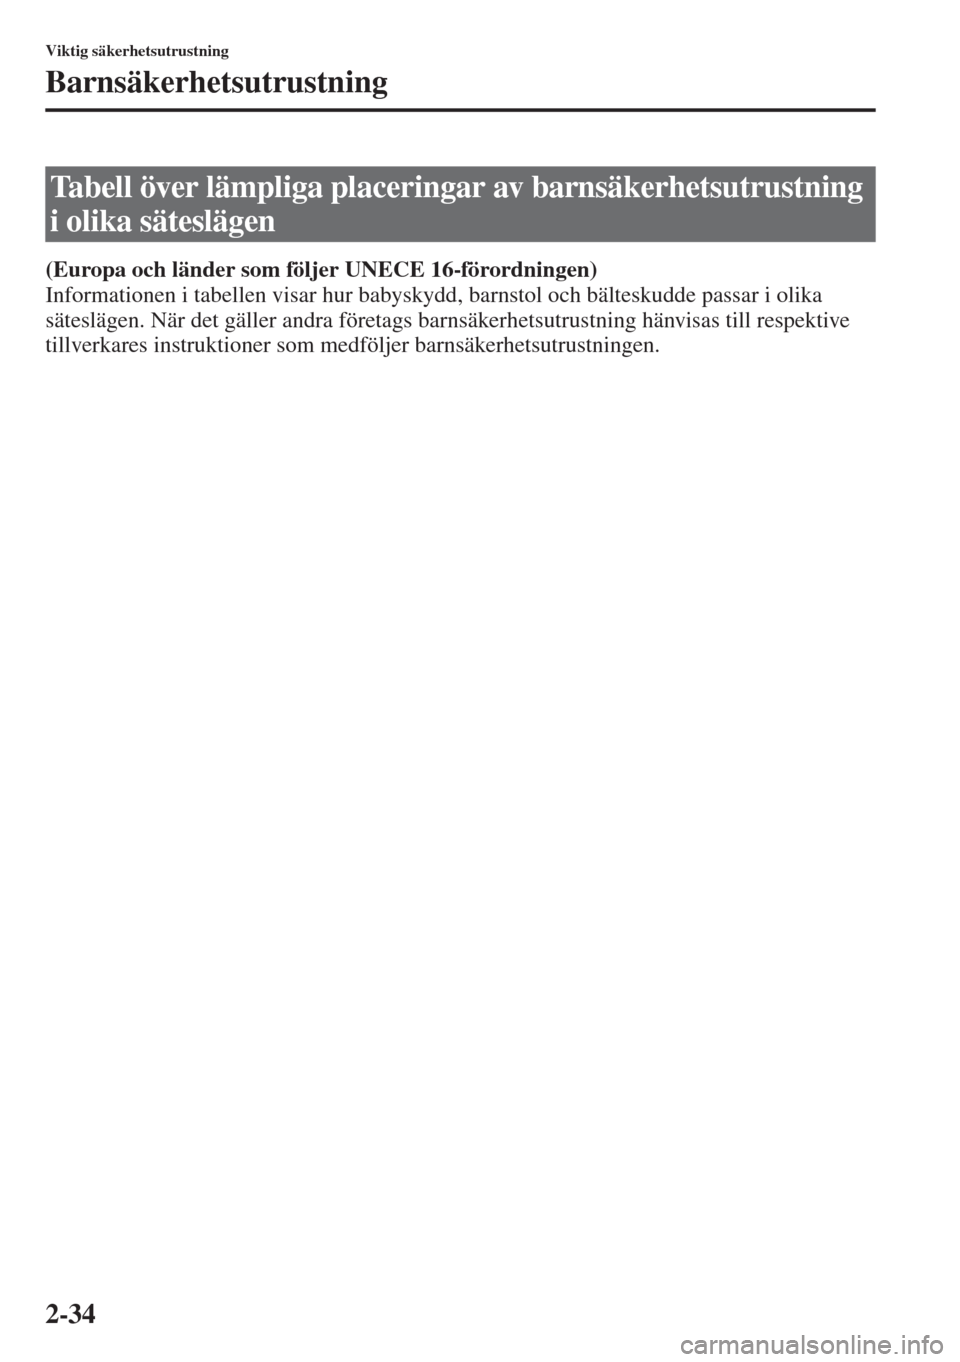 MAZDA MODEL 6 2015  Ägarmanual (in Swedish) 2-34
Viktig säkerhetsutrustning
Barnsäkerhetsutrustning
(Europa och länder som följer UNECE 16-förordningen)
Informationen i tabellen visar hur babyskydd, barnstol och bälteskudde passar i olika